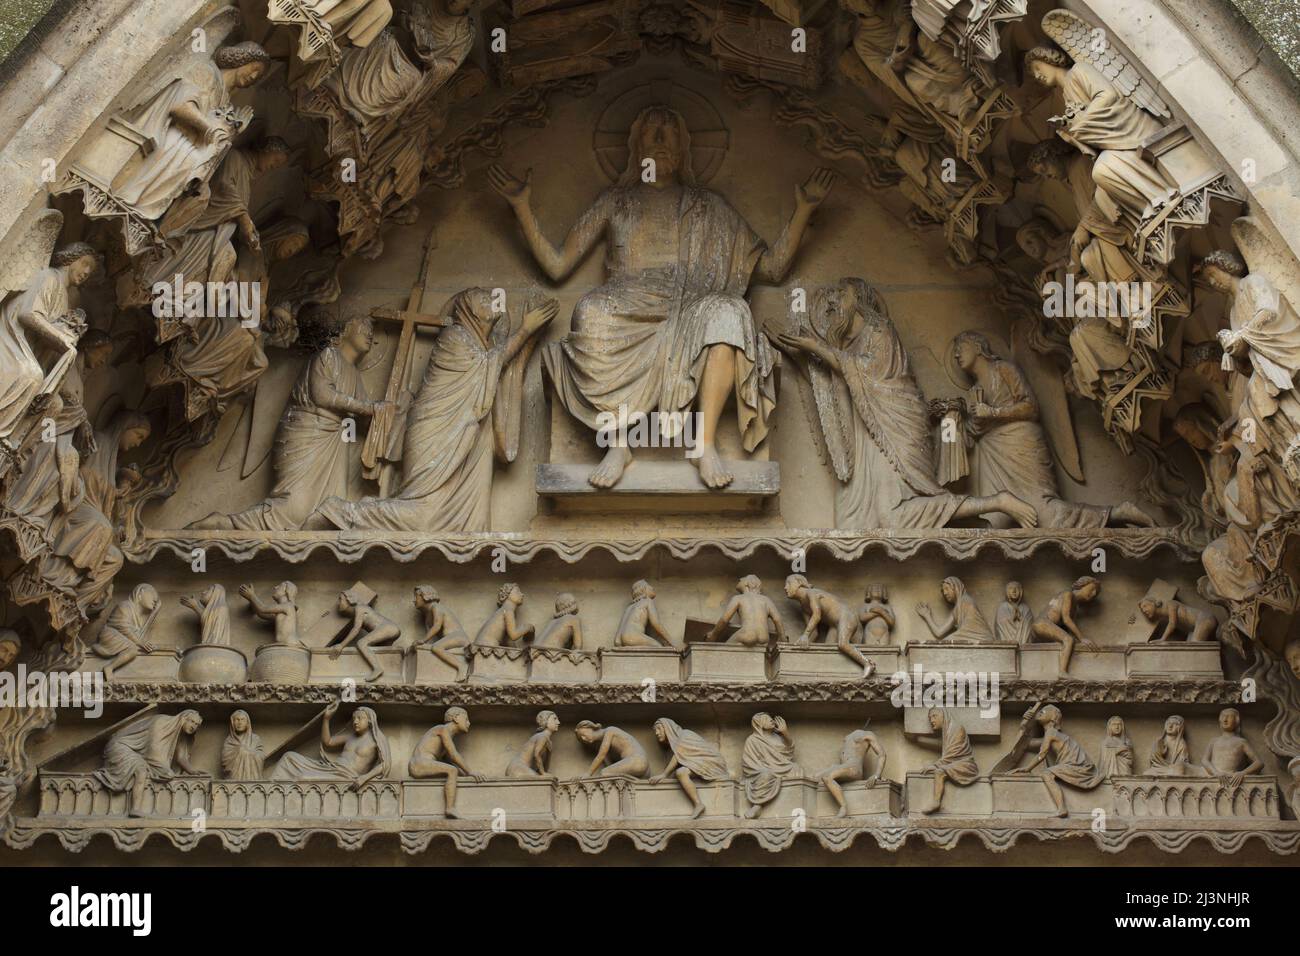 Resurrección de los Muertos durante el Juicio Final representado en el tímpano del portal izquierdo de la fachada norte de la Catedral de Reims (Cathédrale Notre-Dame de Reims) en Reims, Francia. Foto de stock